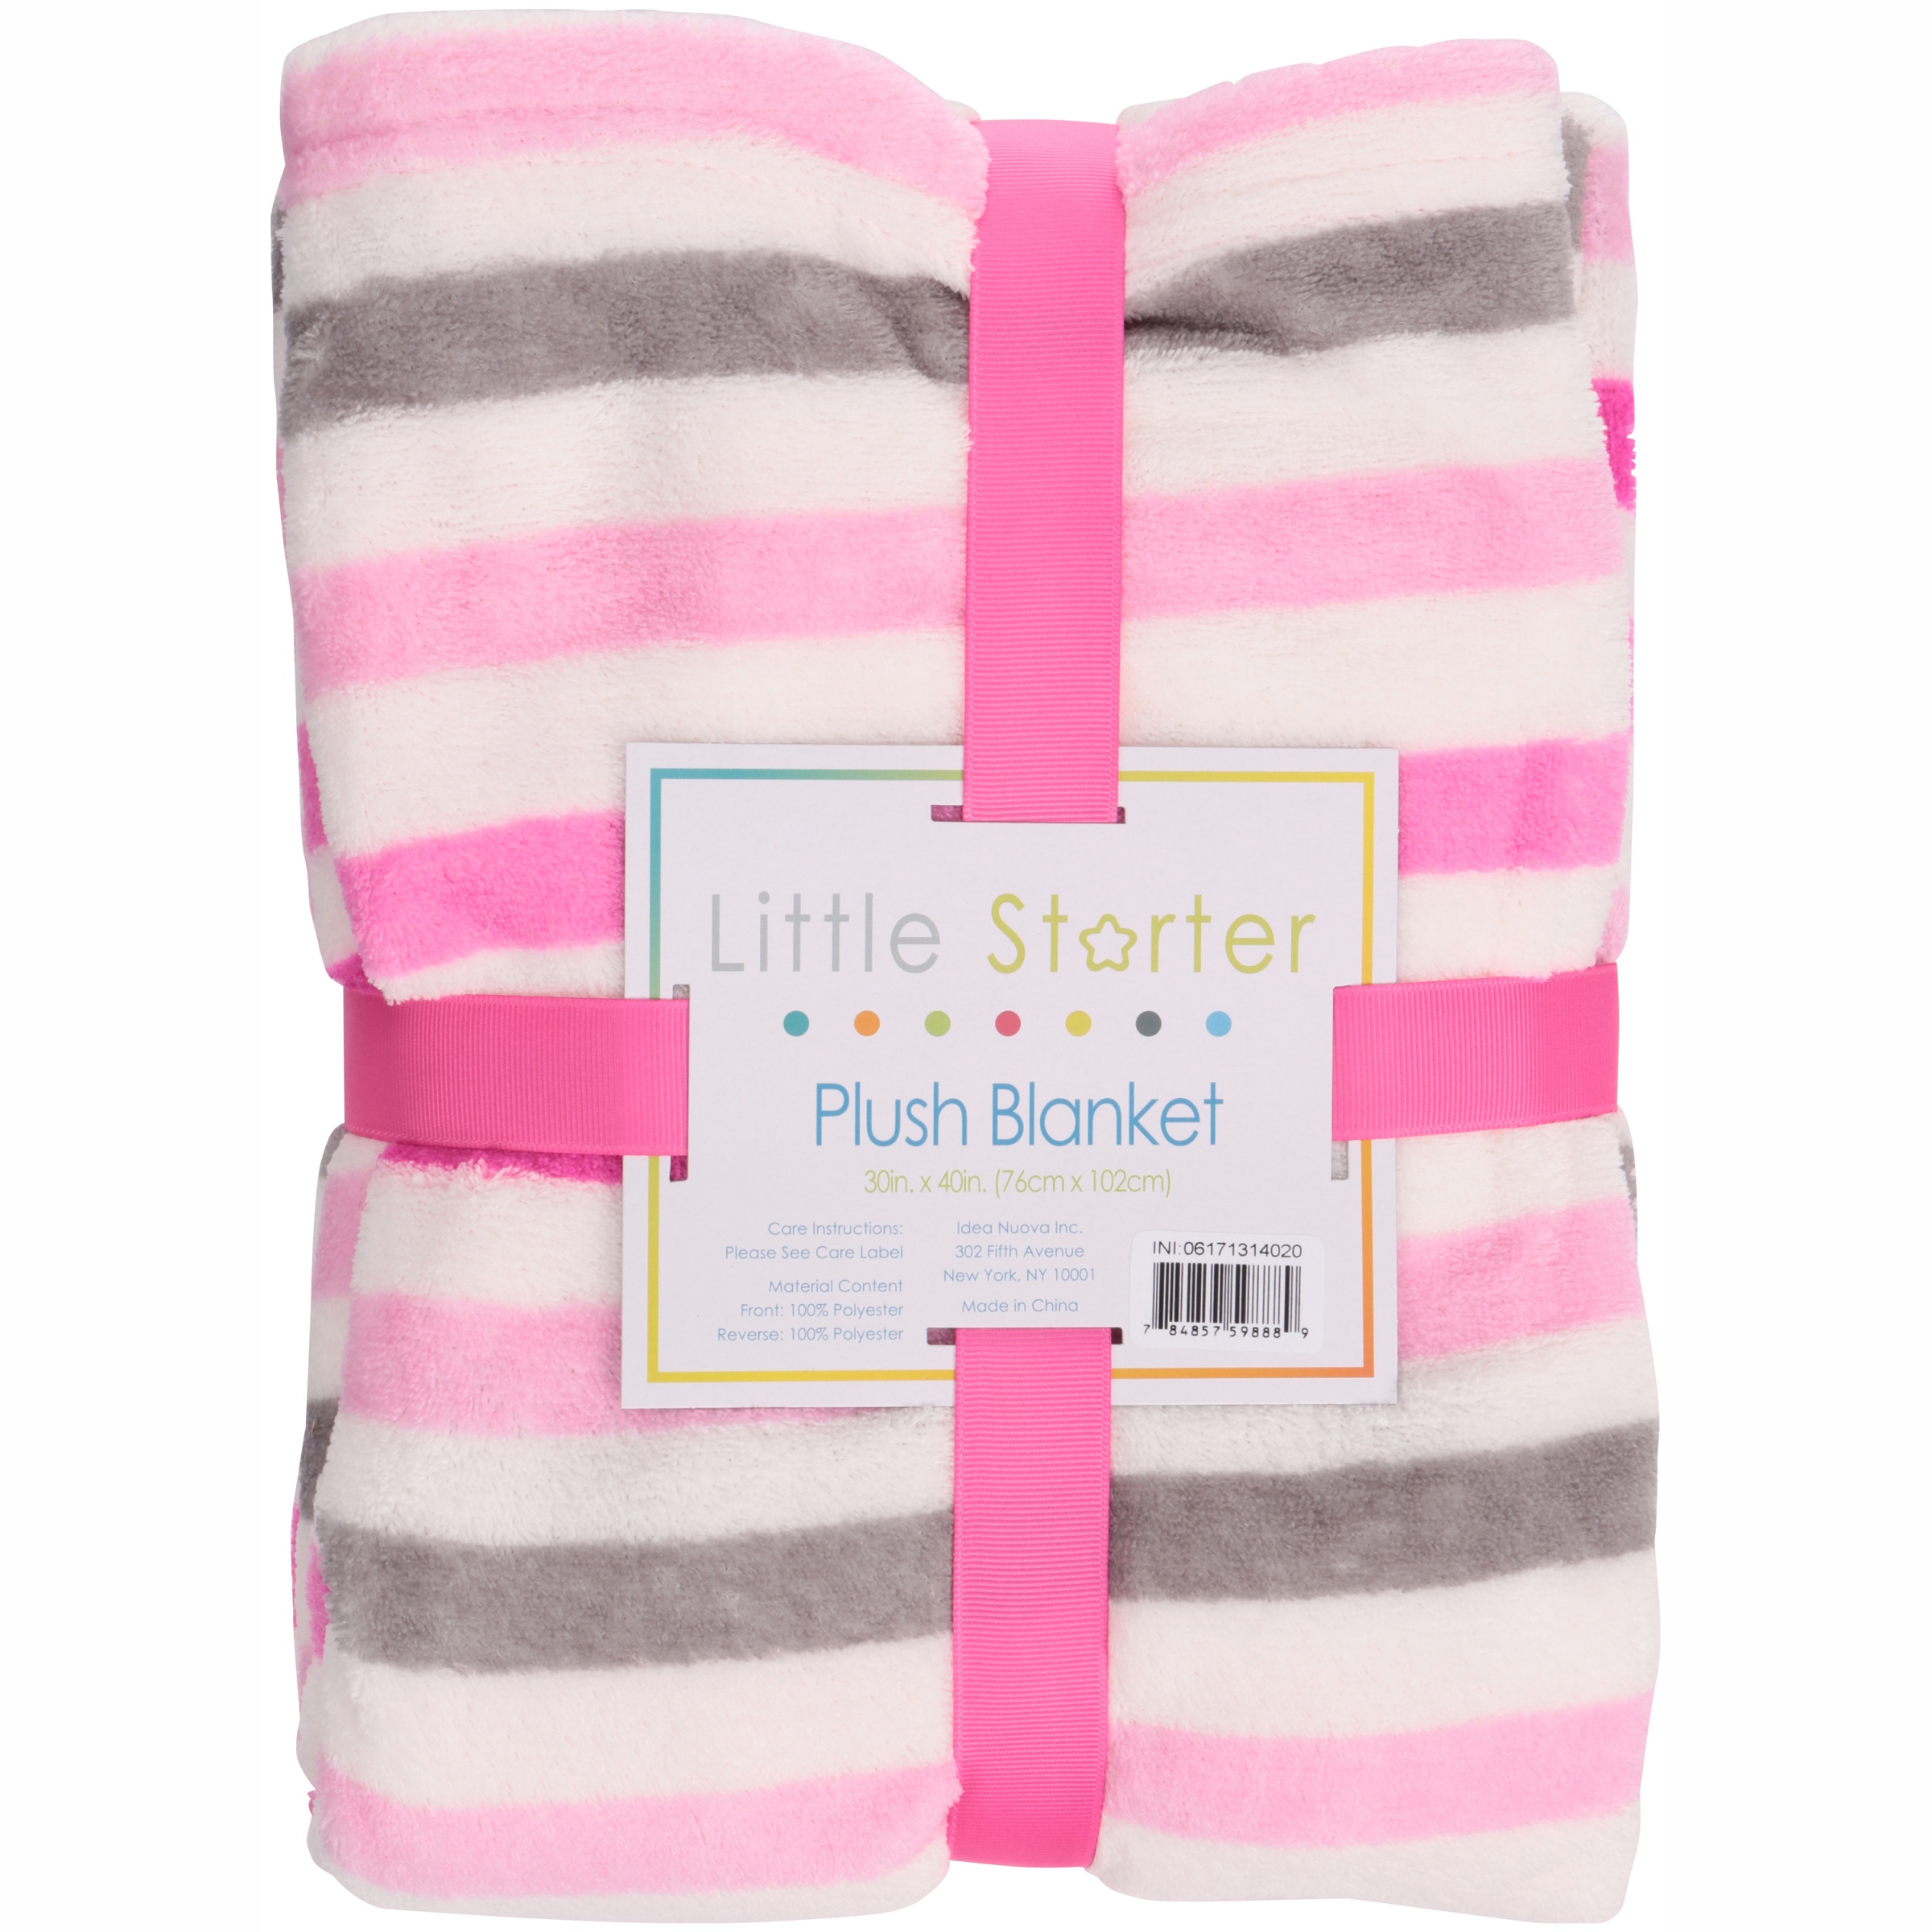 Little Starter Female Plush Blanket Pink 95% Plush Crib Blanket - image 1 of 3